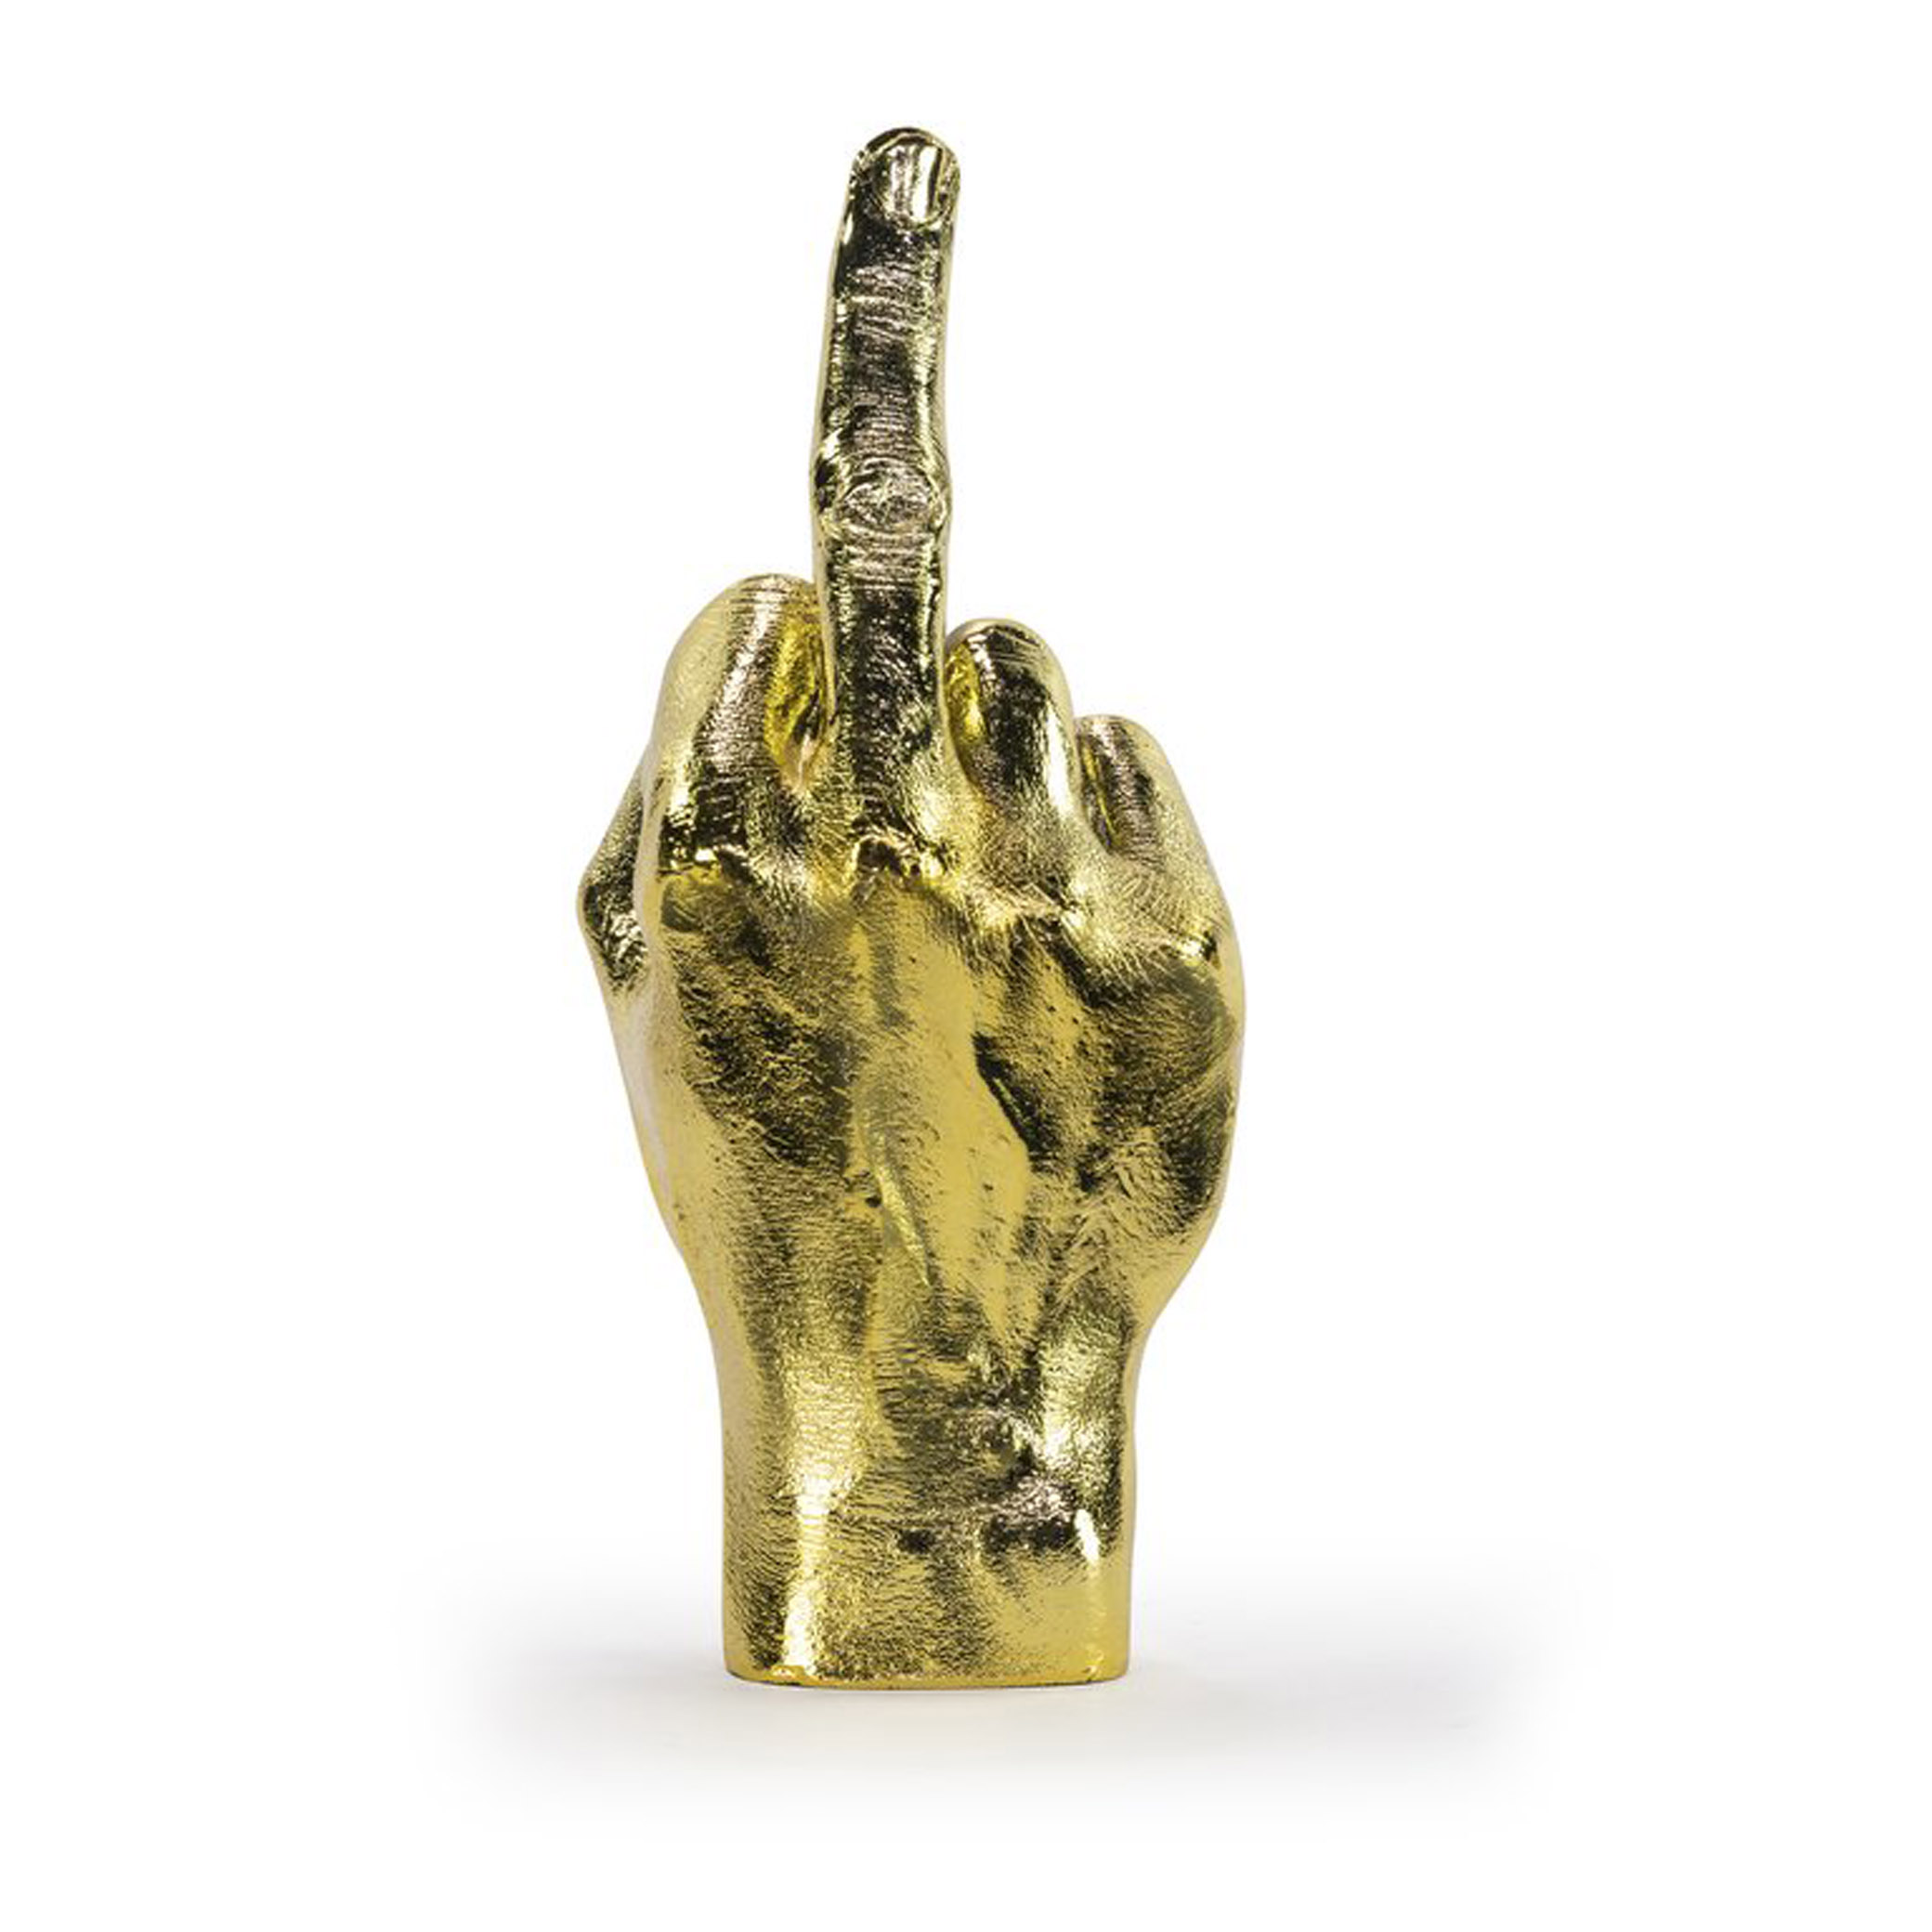 Bitten Design Gold The Finger Hand Sculpture